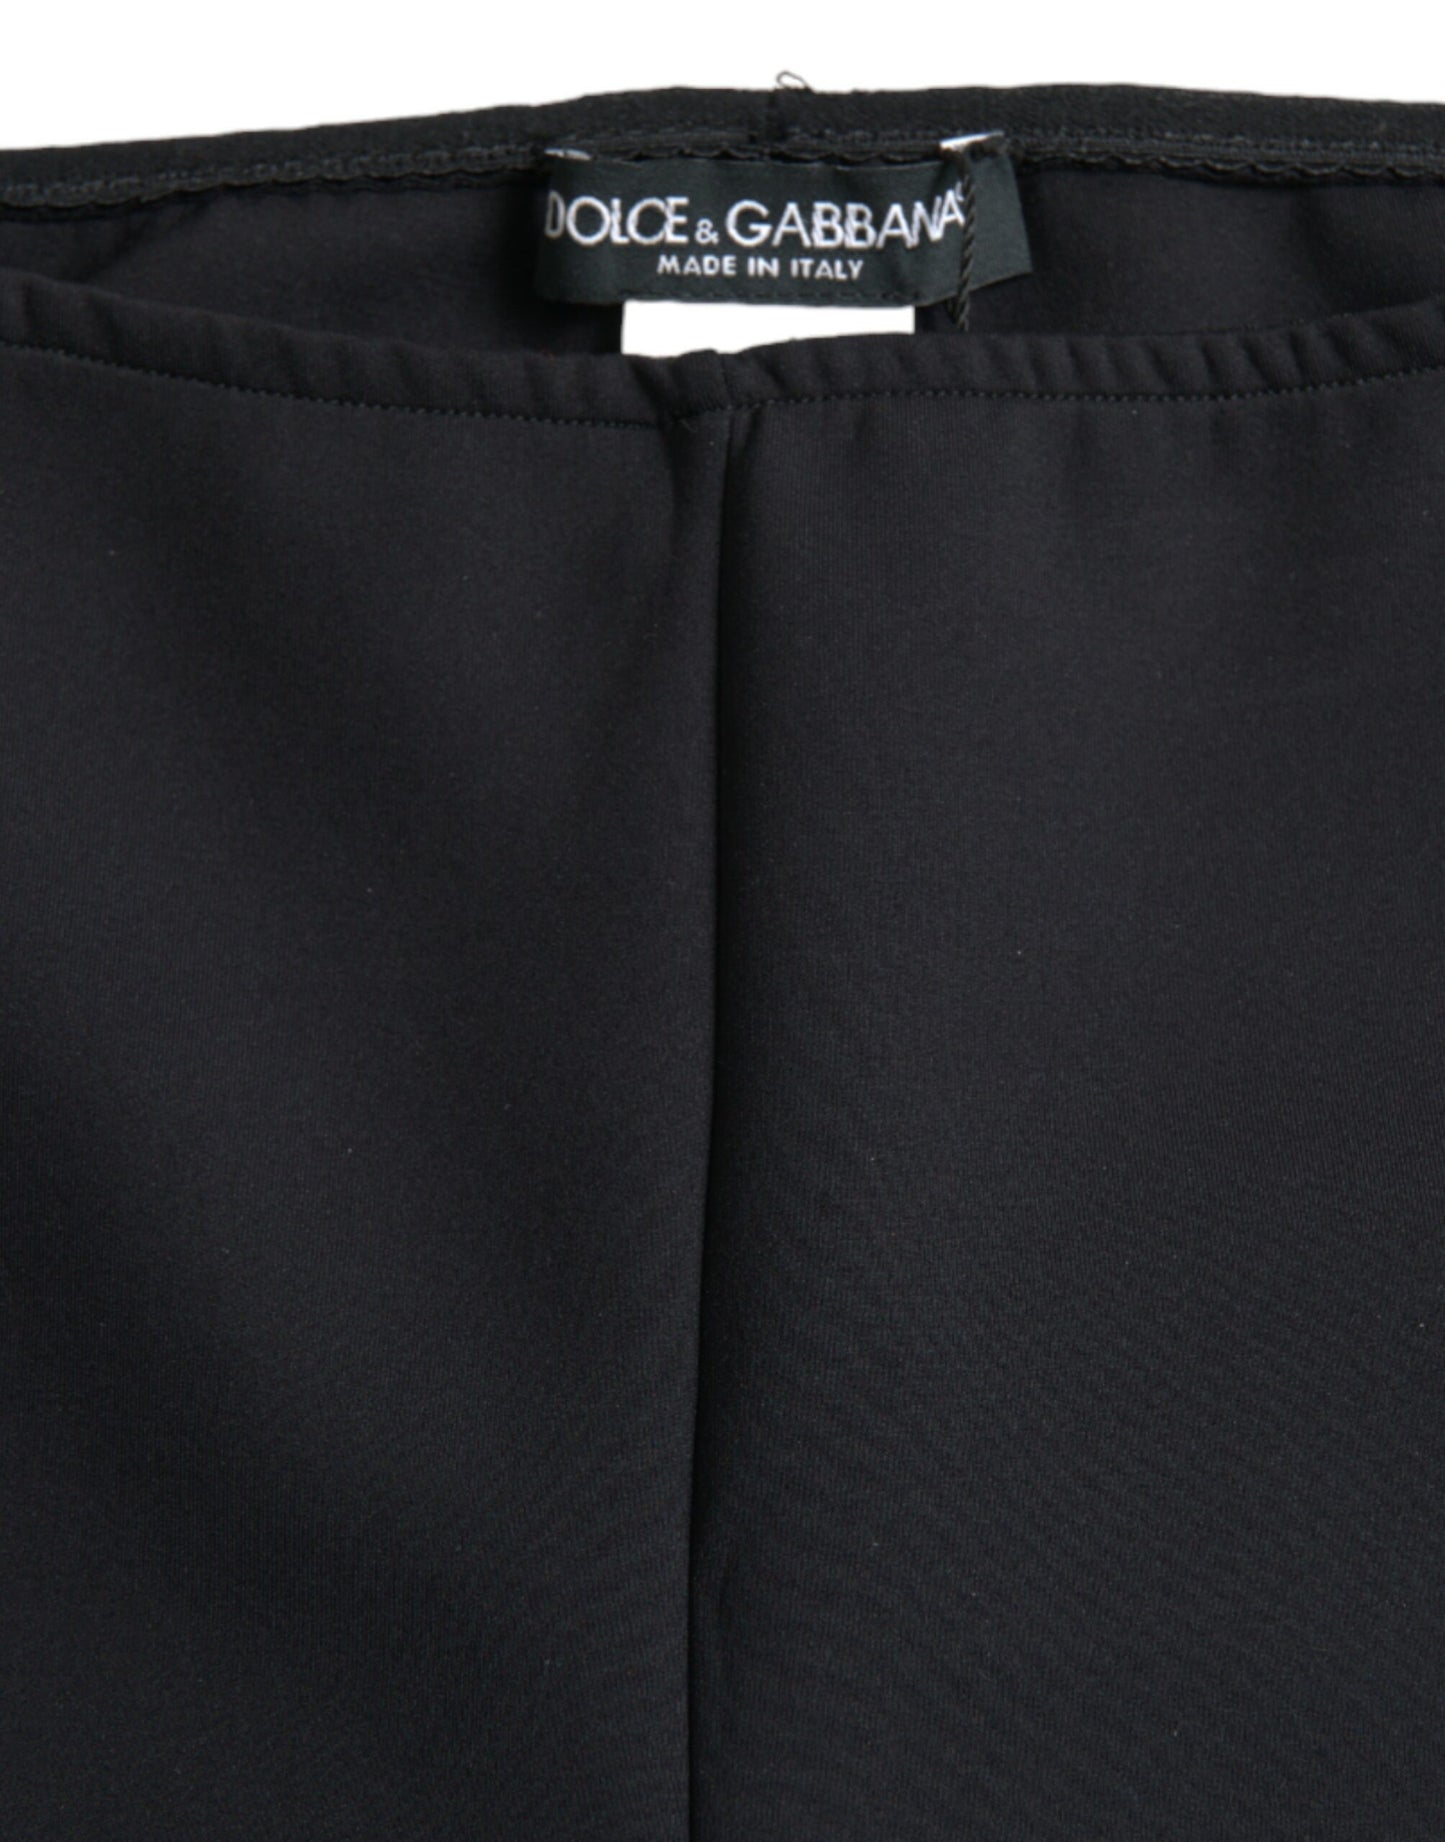 Dolce & Gabbana Elegant High Waist Black Leggings